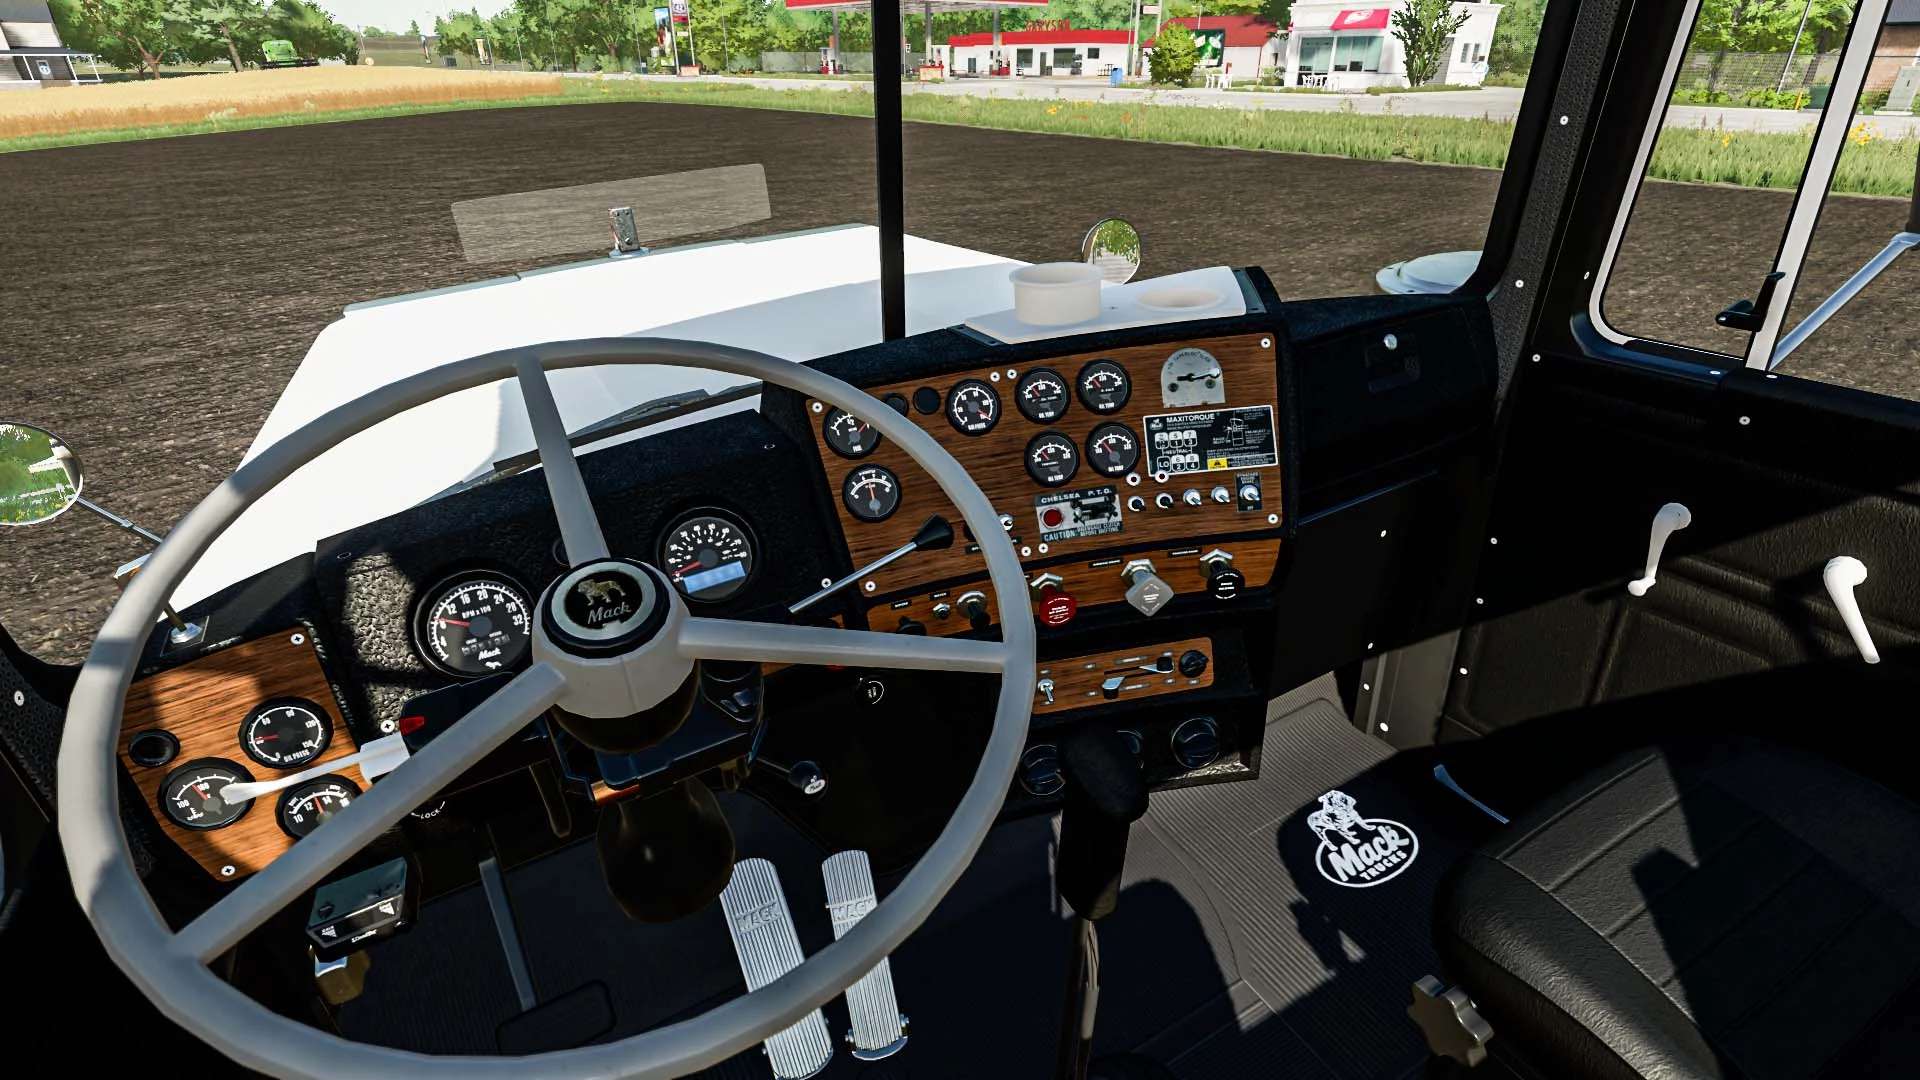 Mack Anthem Pinnacle Superliner Pack V1000 Fs22 Mod Farming Simulator 22 Mod 7685